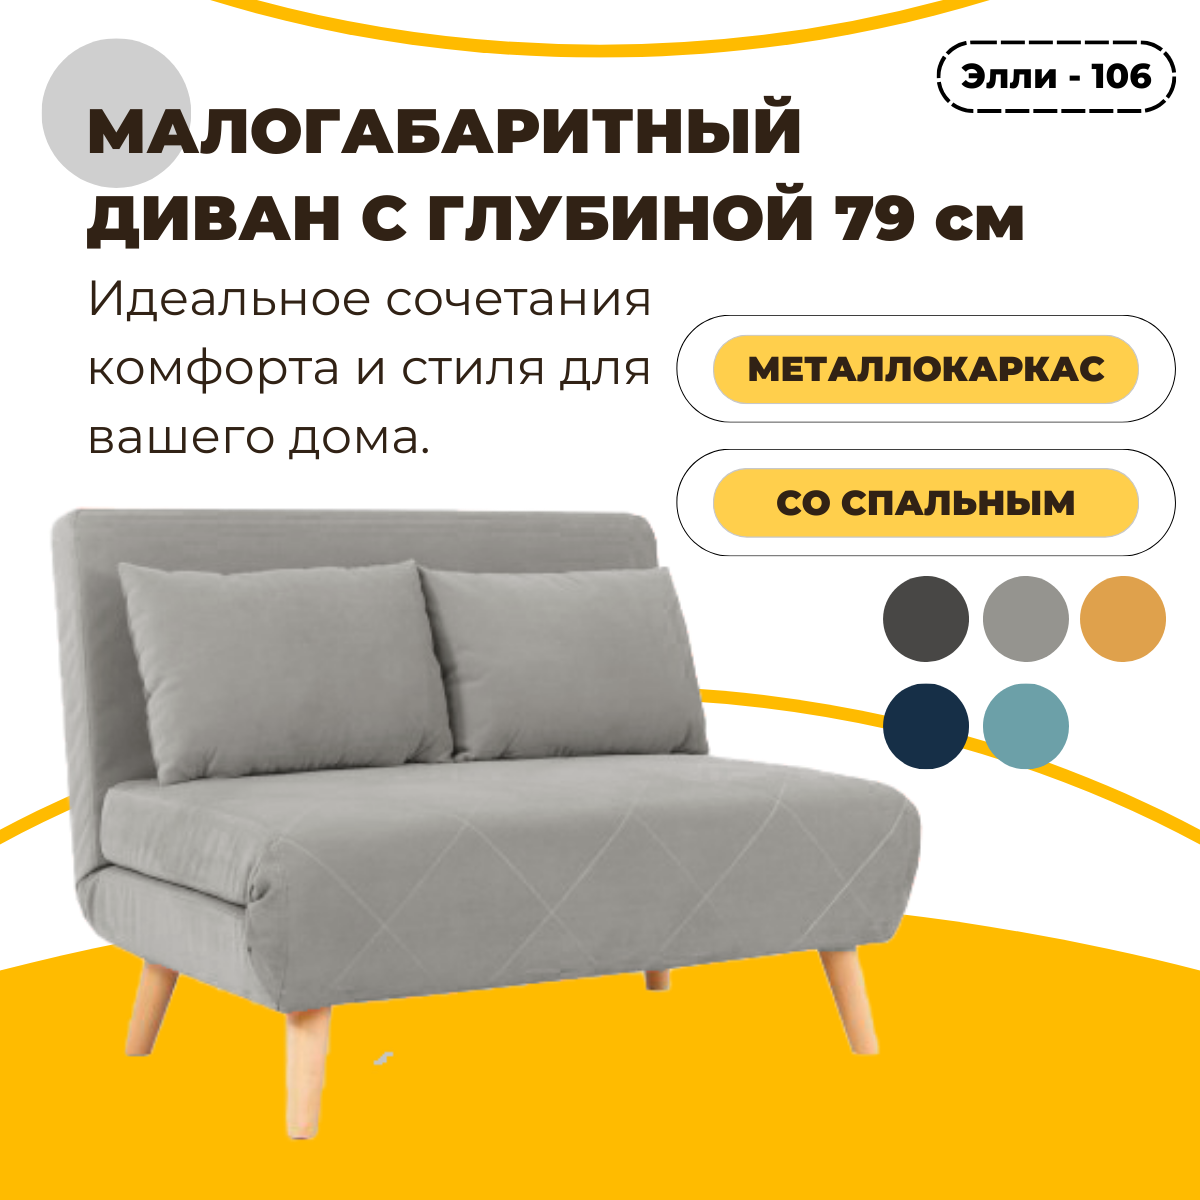 Малогабаритный диван-кровать Элли - 106 с глубиной 79 см, механизм улитка, ткань велюр, регулируемая спинка, диван на кухню, диван на балкон, диван в гостинную, диван в студию